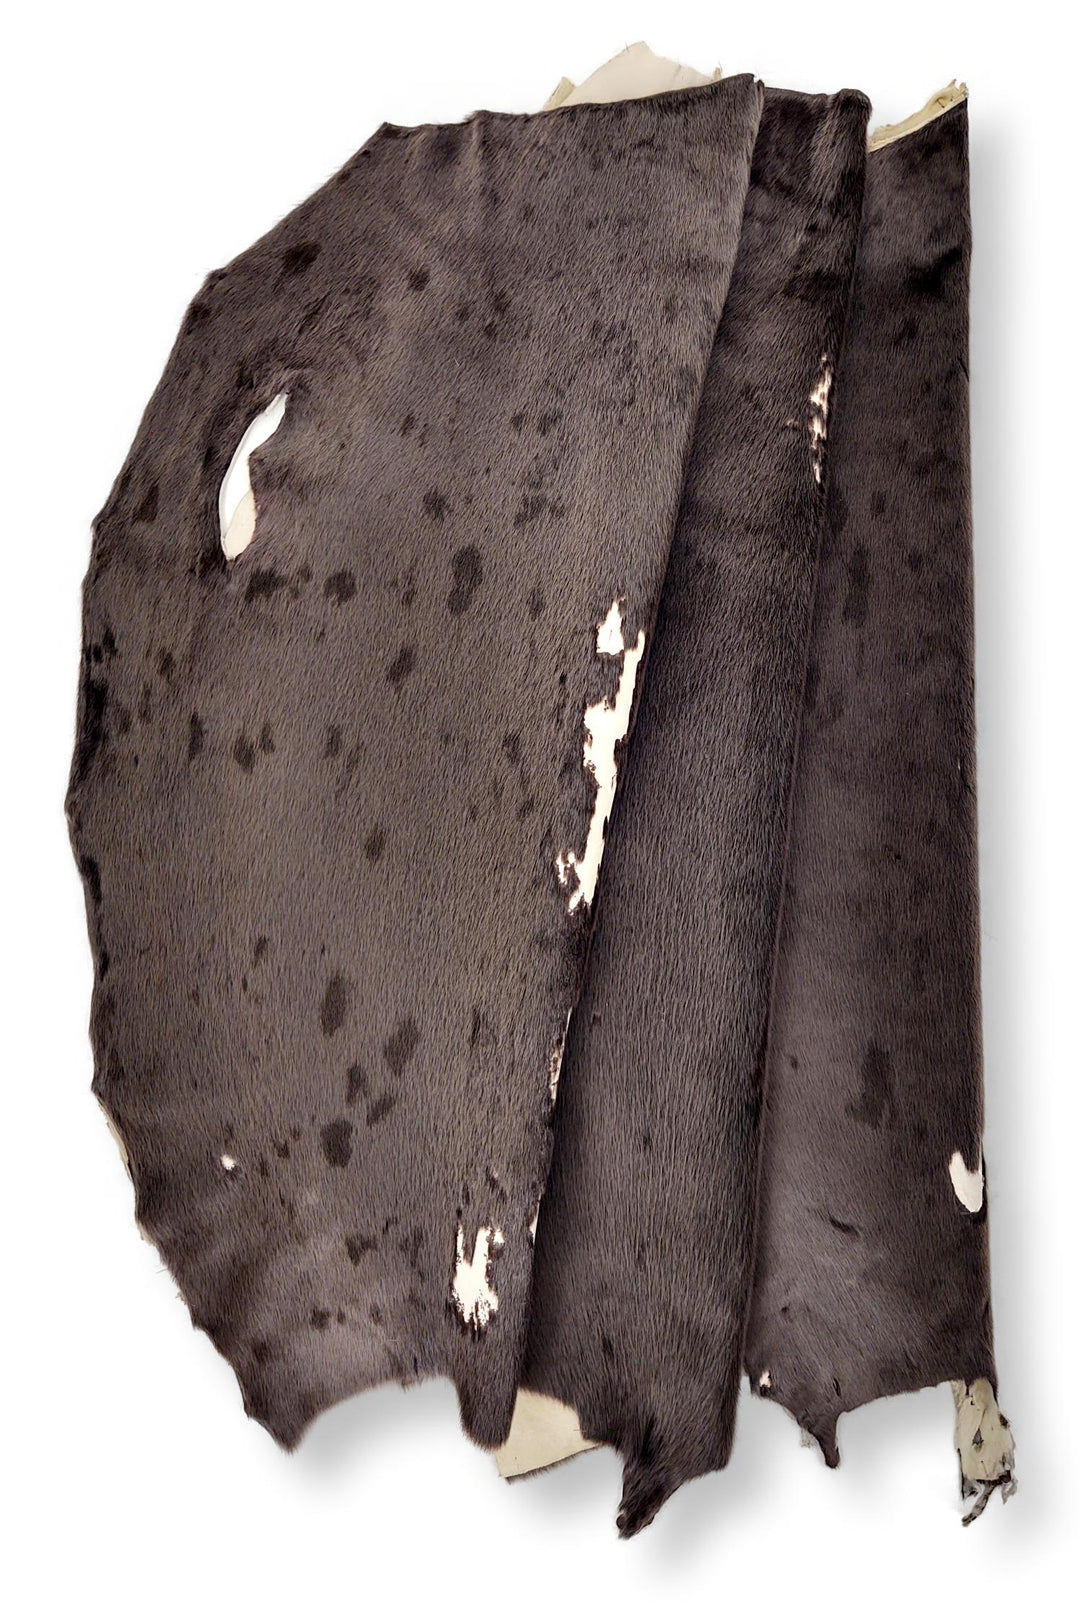 Phoque du Groenland Cacao - Peau de fourrure habillée - Fourrure